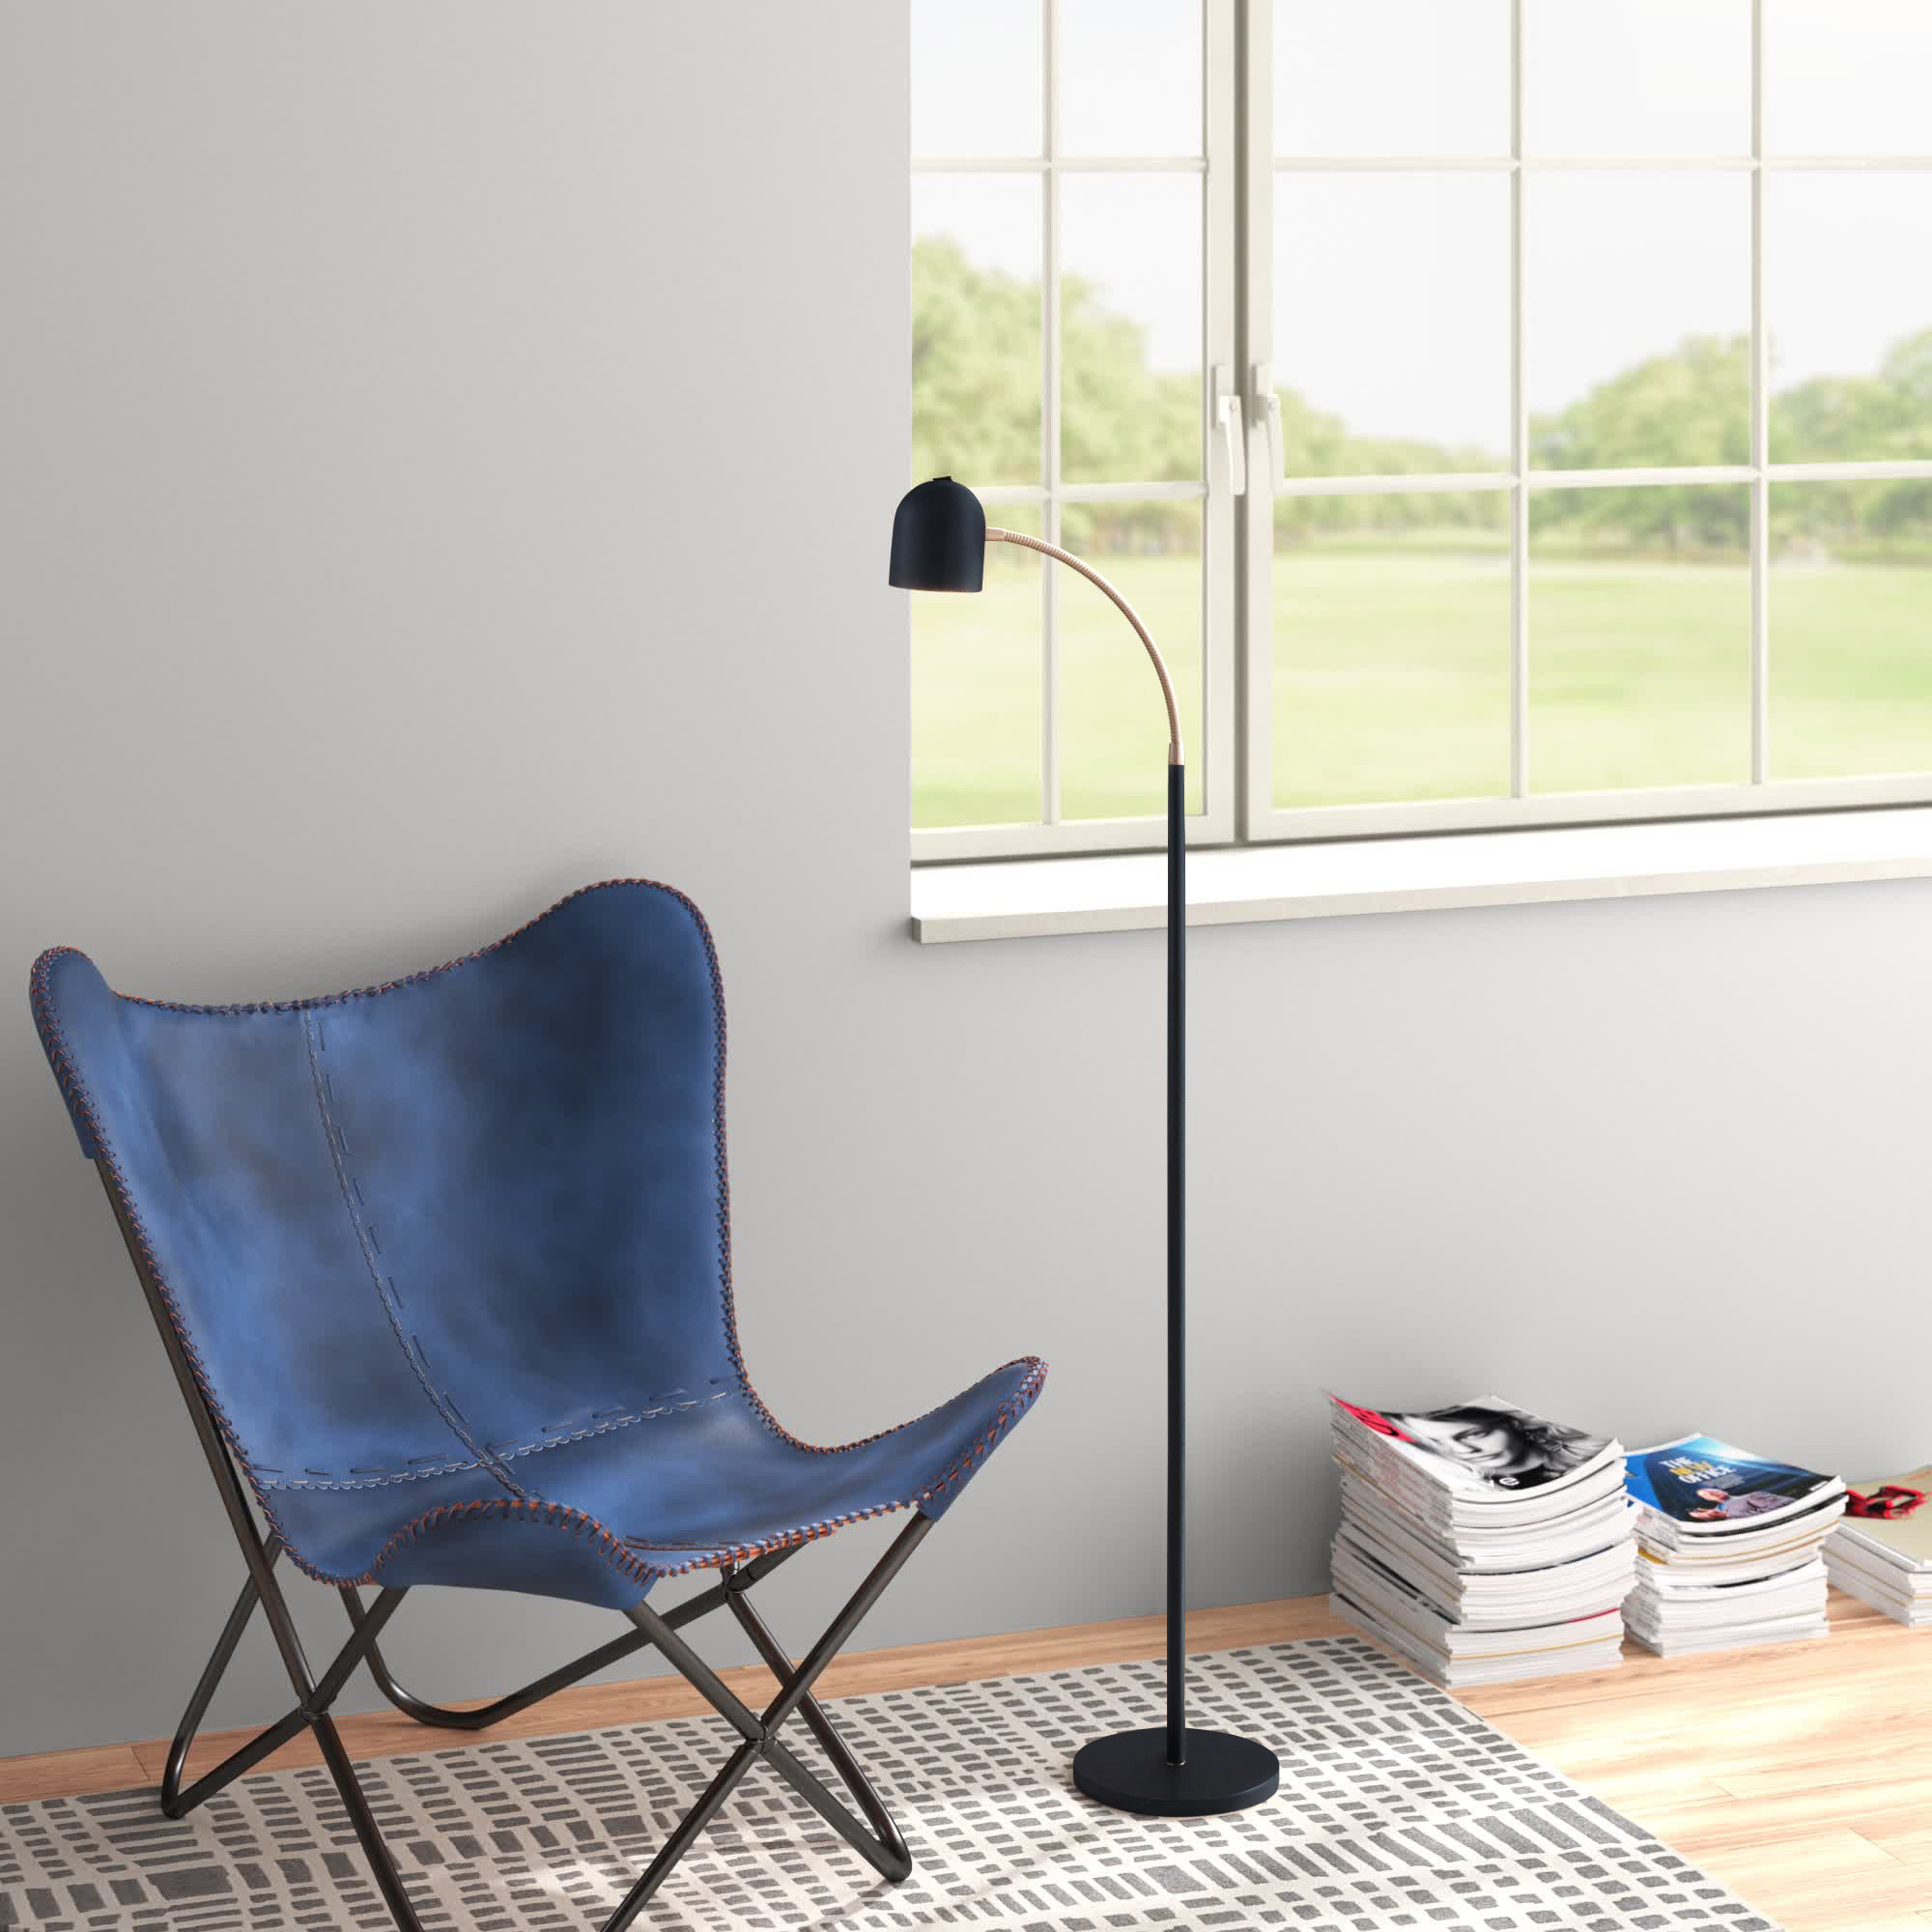 Sunnex Goose Neck LED Floor Lamp For Reading, Tasks, and